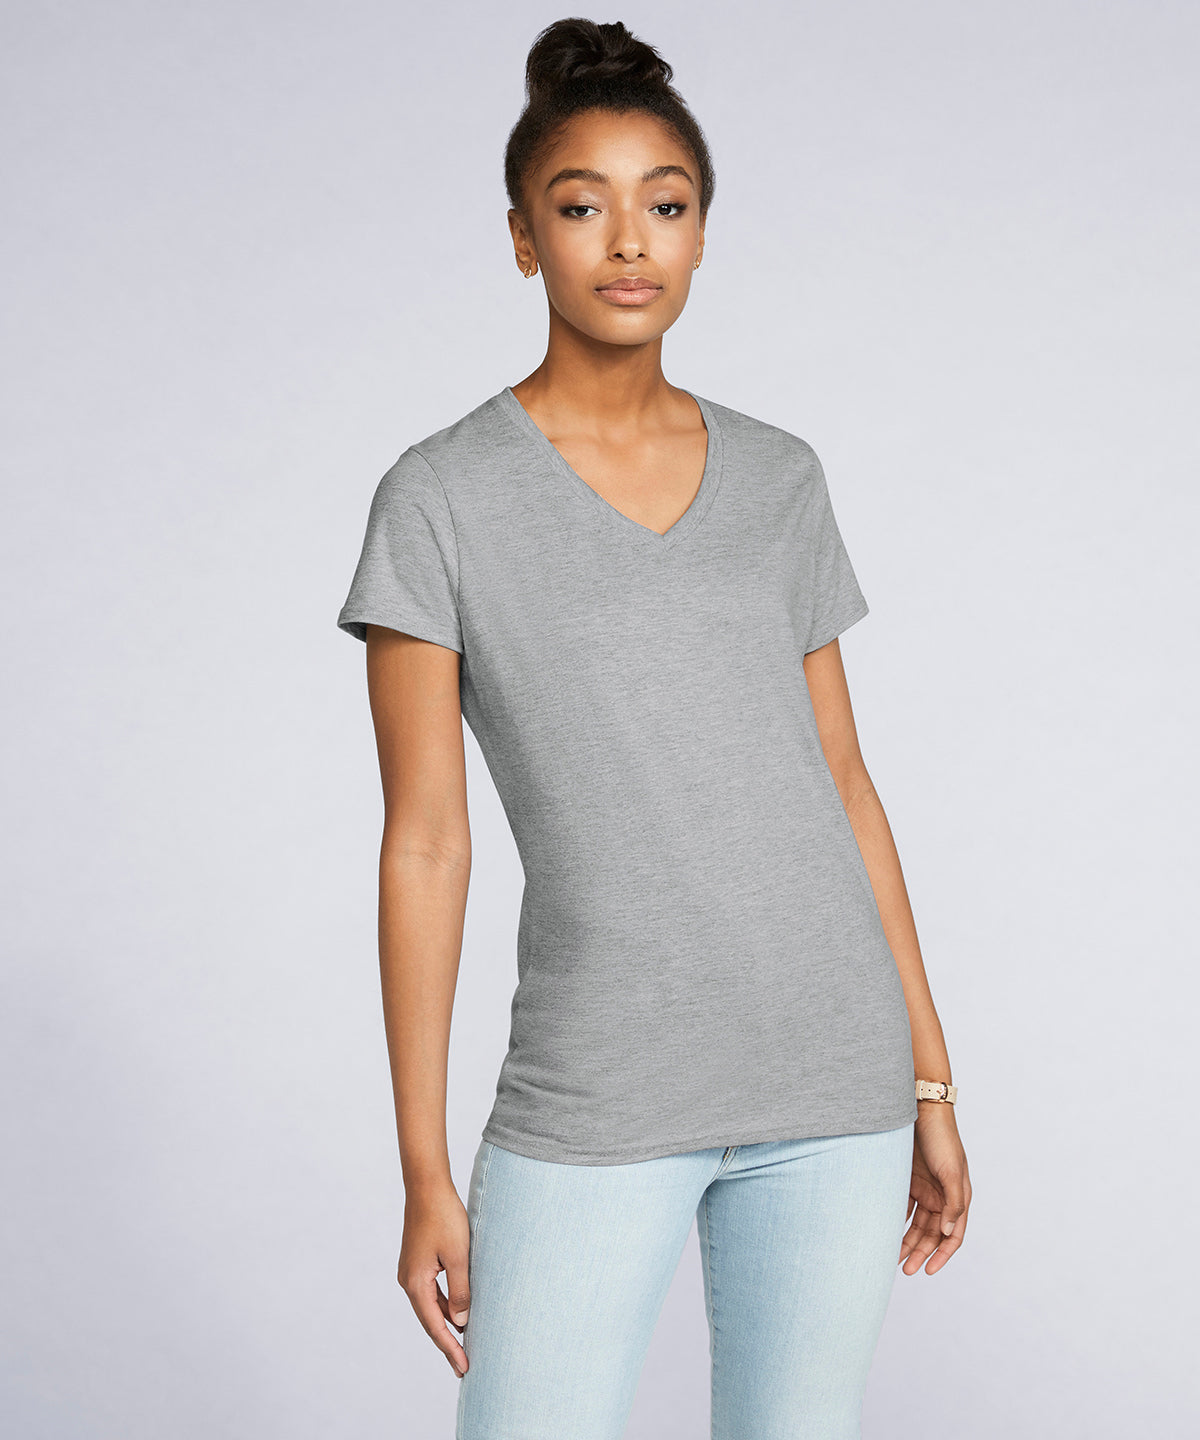 Stuttermabolir - Women's Premium Cotton® V-neck T-shirt